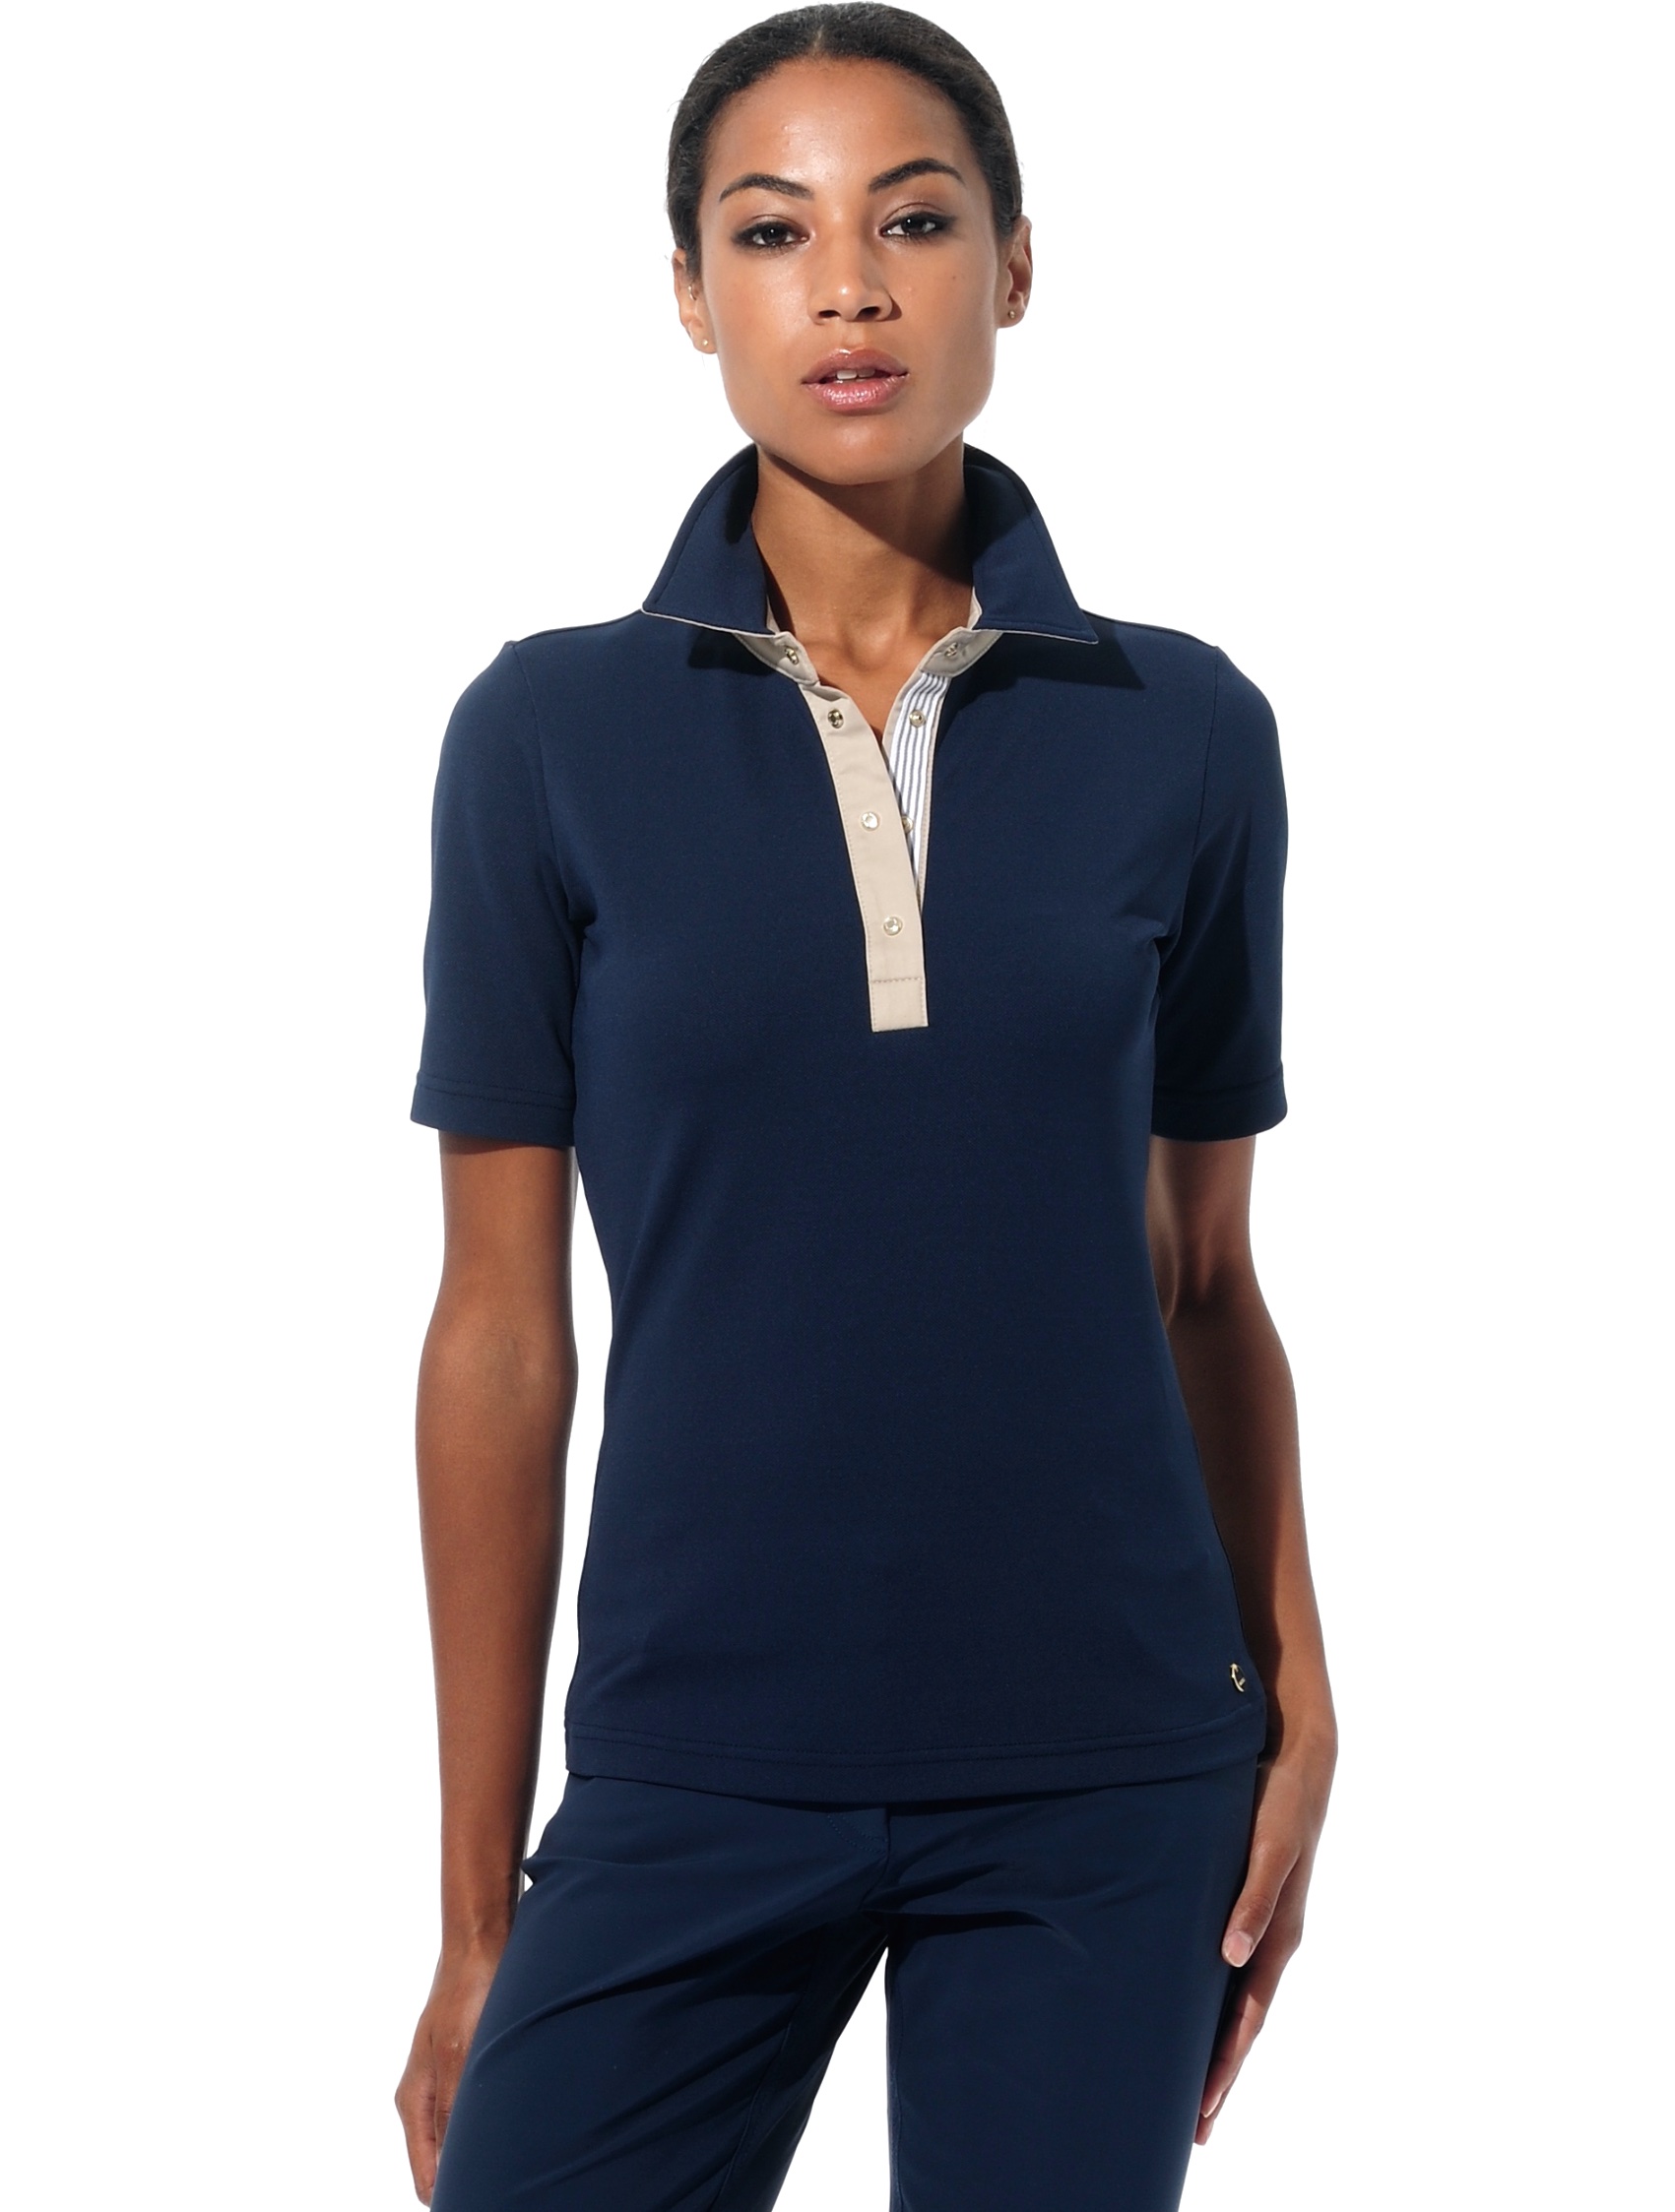 Piqué Golf Poloshirt navy/light taupe